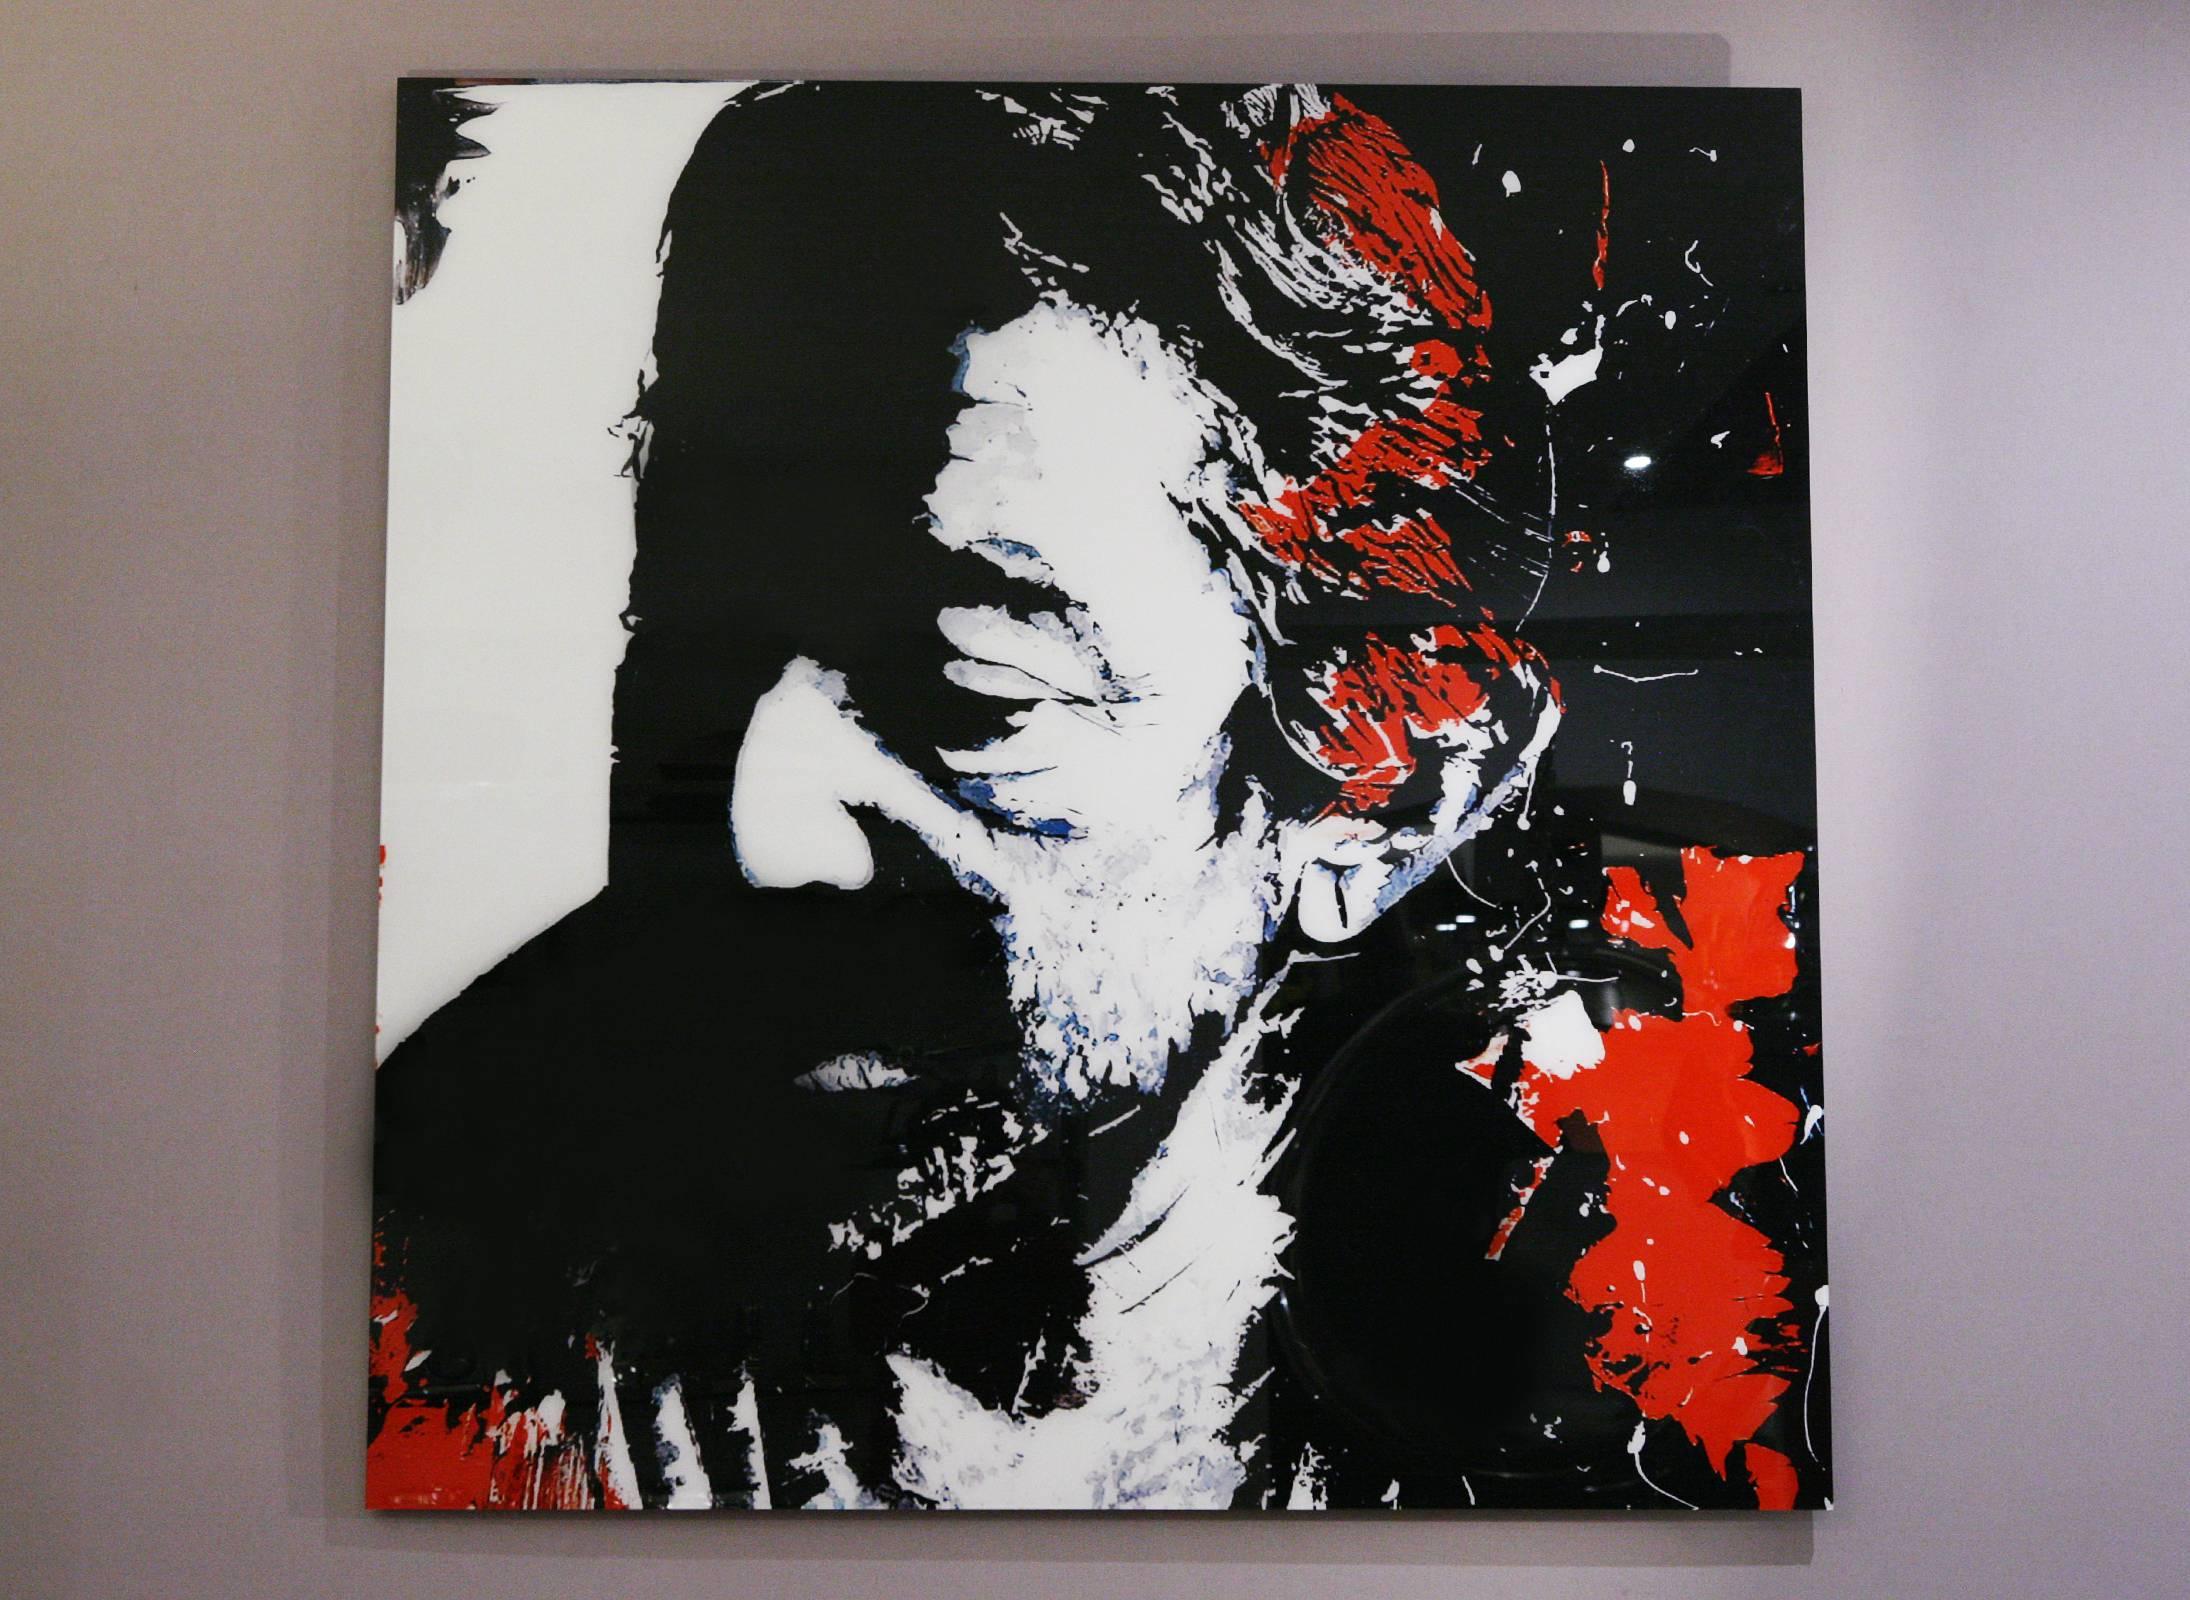 Photographie Serge Gainsbourg sur plexiglas.
Édition limitée de six pièces. Réalisé par Valerie 
Artiste Durand. Livré avec certificat.
